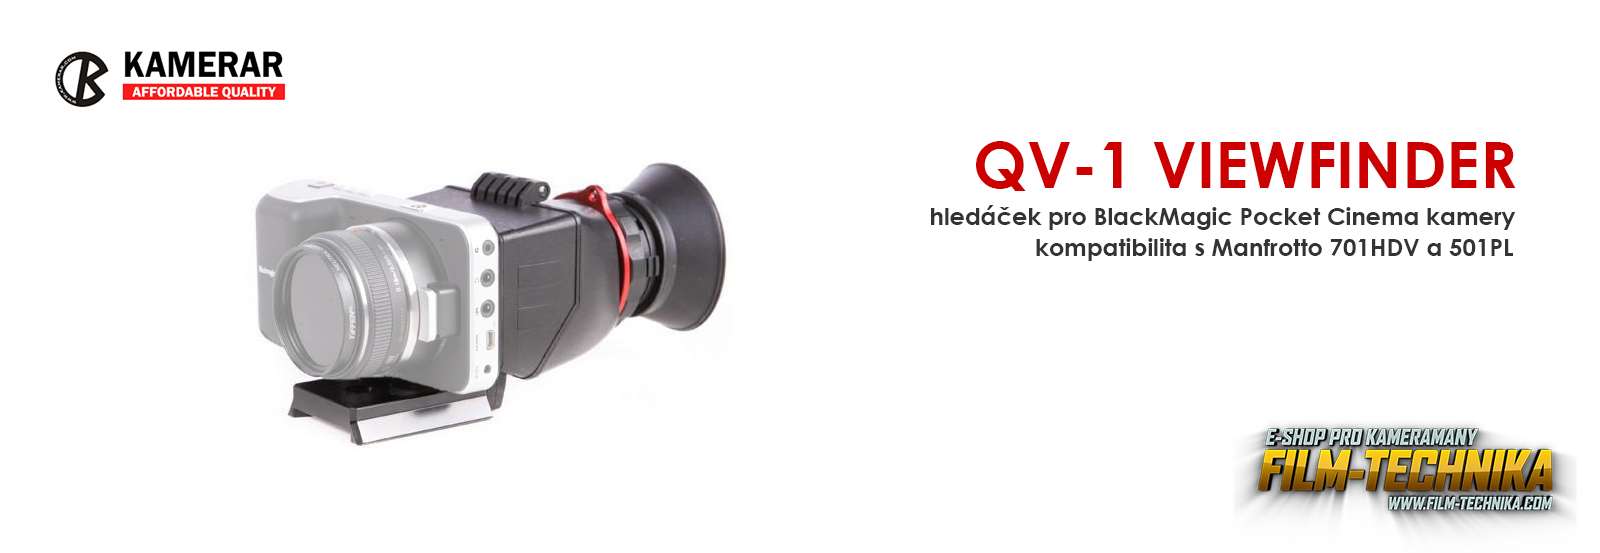 film-technika-kamerar-qv-1-00-intext2